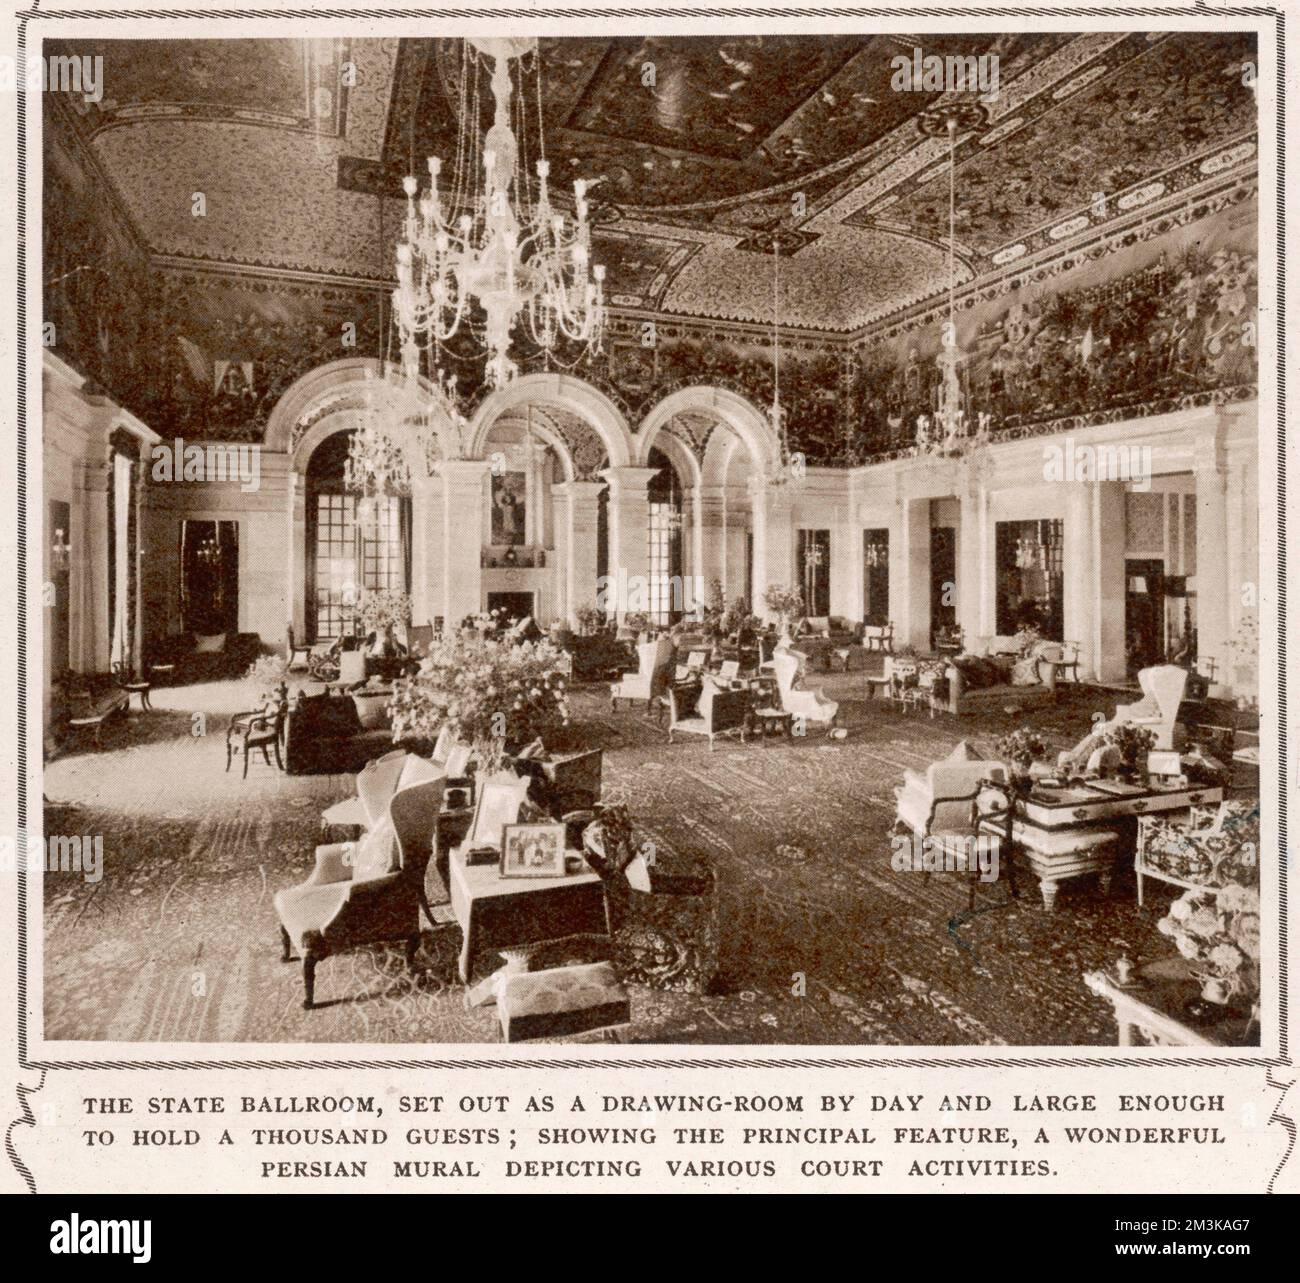 Der staatliche Ballsaal des Hauses des Vizekönigs Indiens in Neu-Delhi, Indien, groß genug für 1000 Gäste und zeigt das Hauptmerkmal, ein wunderbares persisches Wandbild, das verschiedene Gerichtsaktivitäten darstellt. 1935 Stockfoto